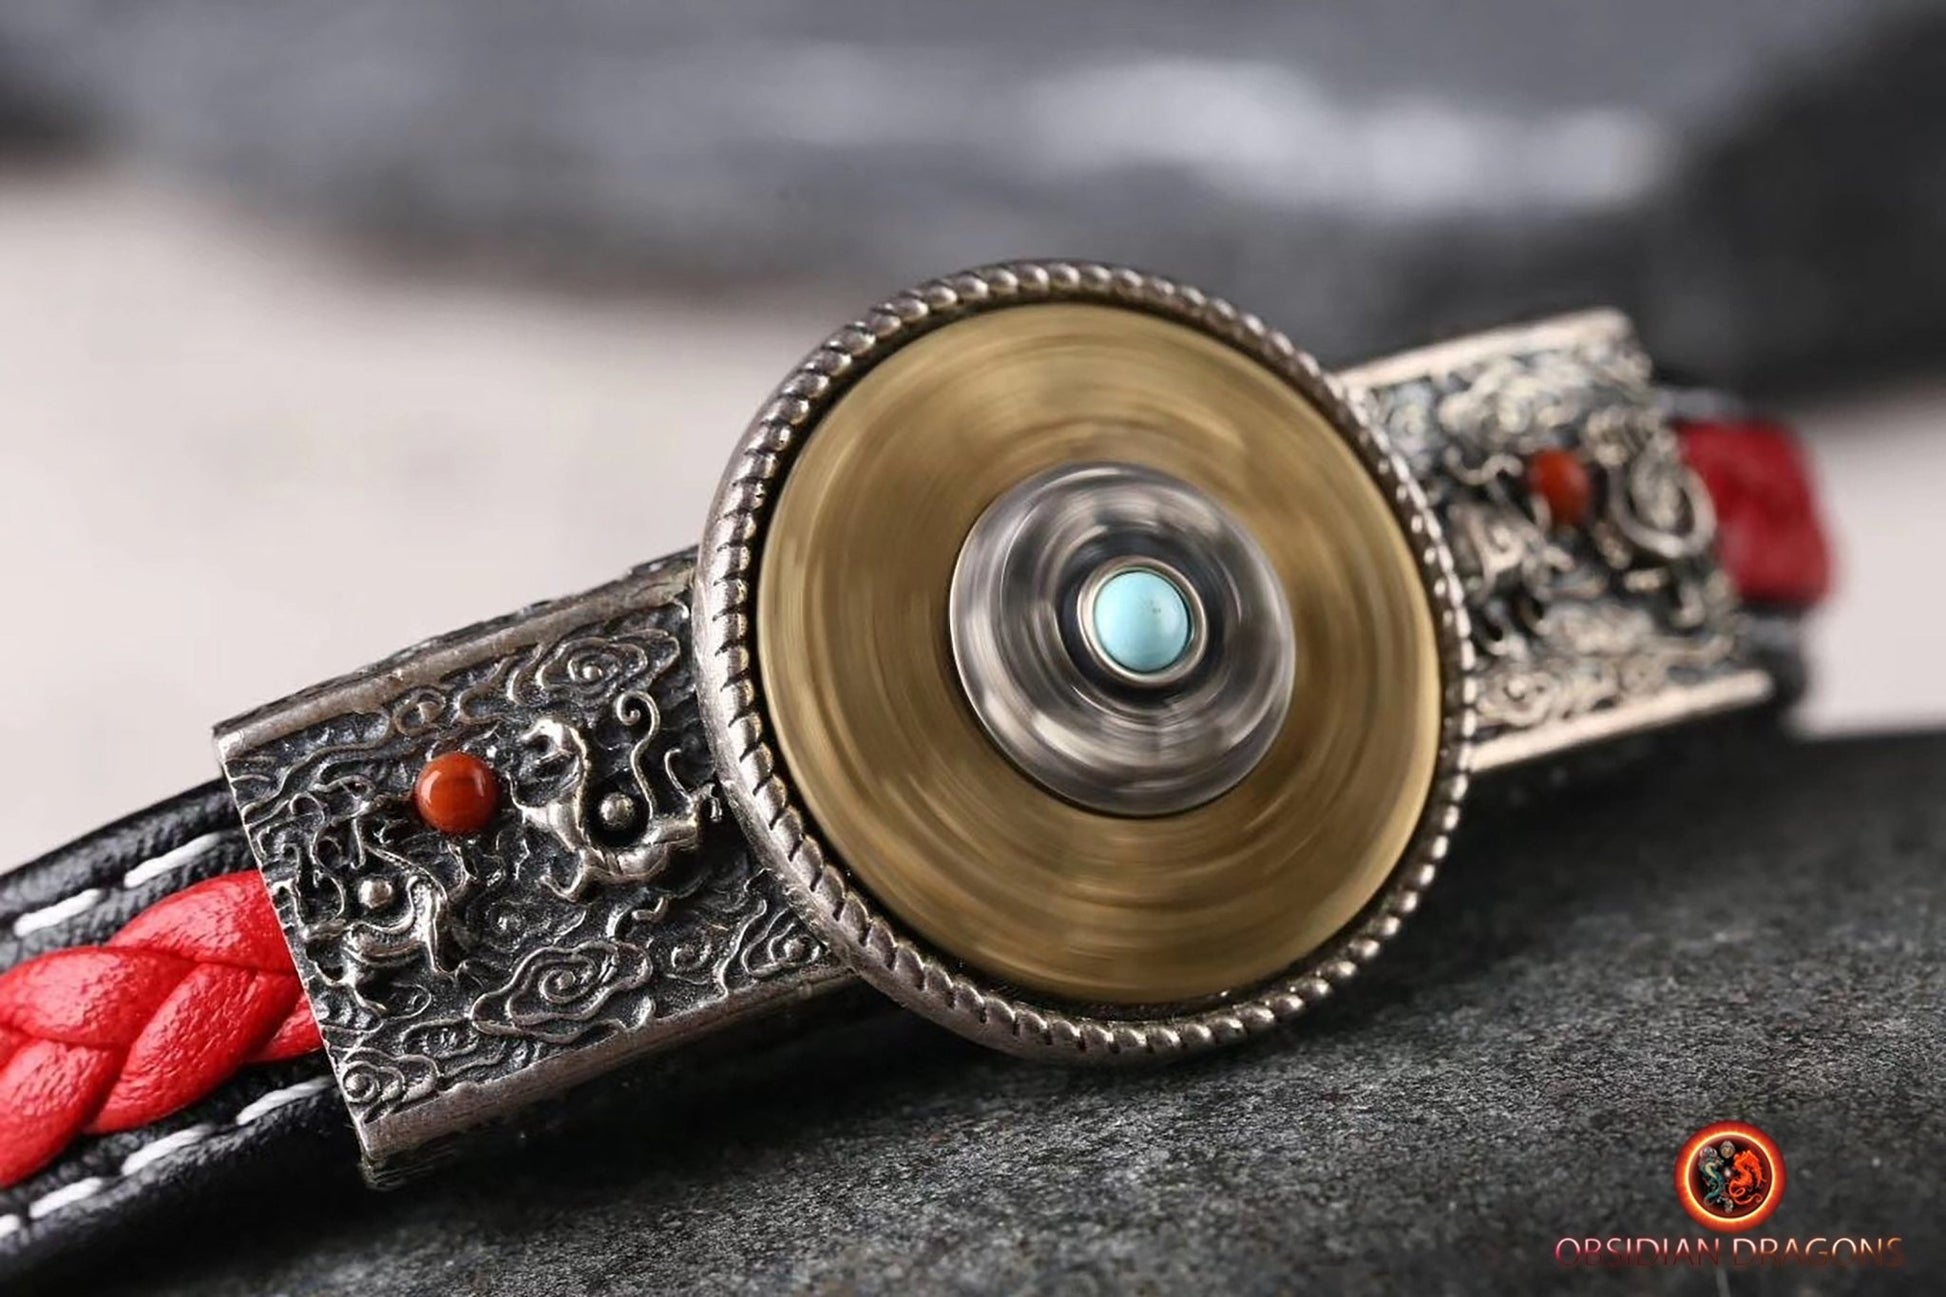 bracelet de protection bouddhiste, 8 signes auspicieux. Argent 925, cuivre, cuir tressé, turquoises - obsidian dragon